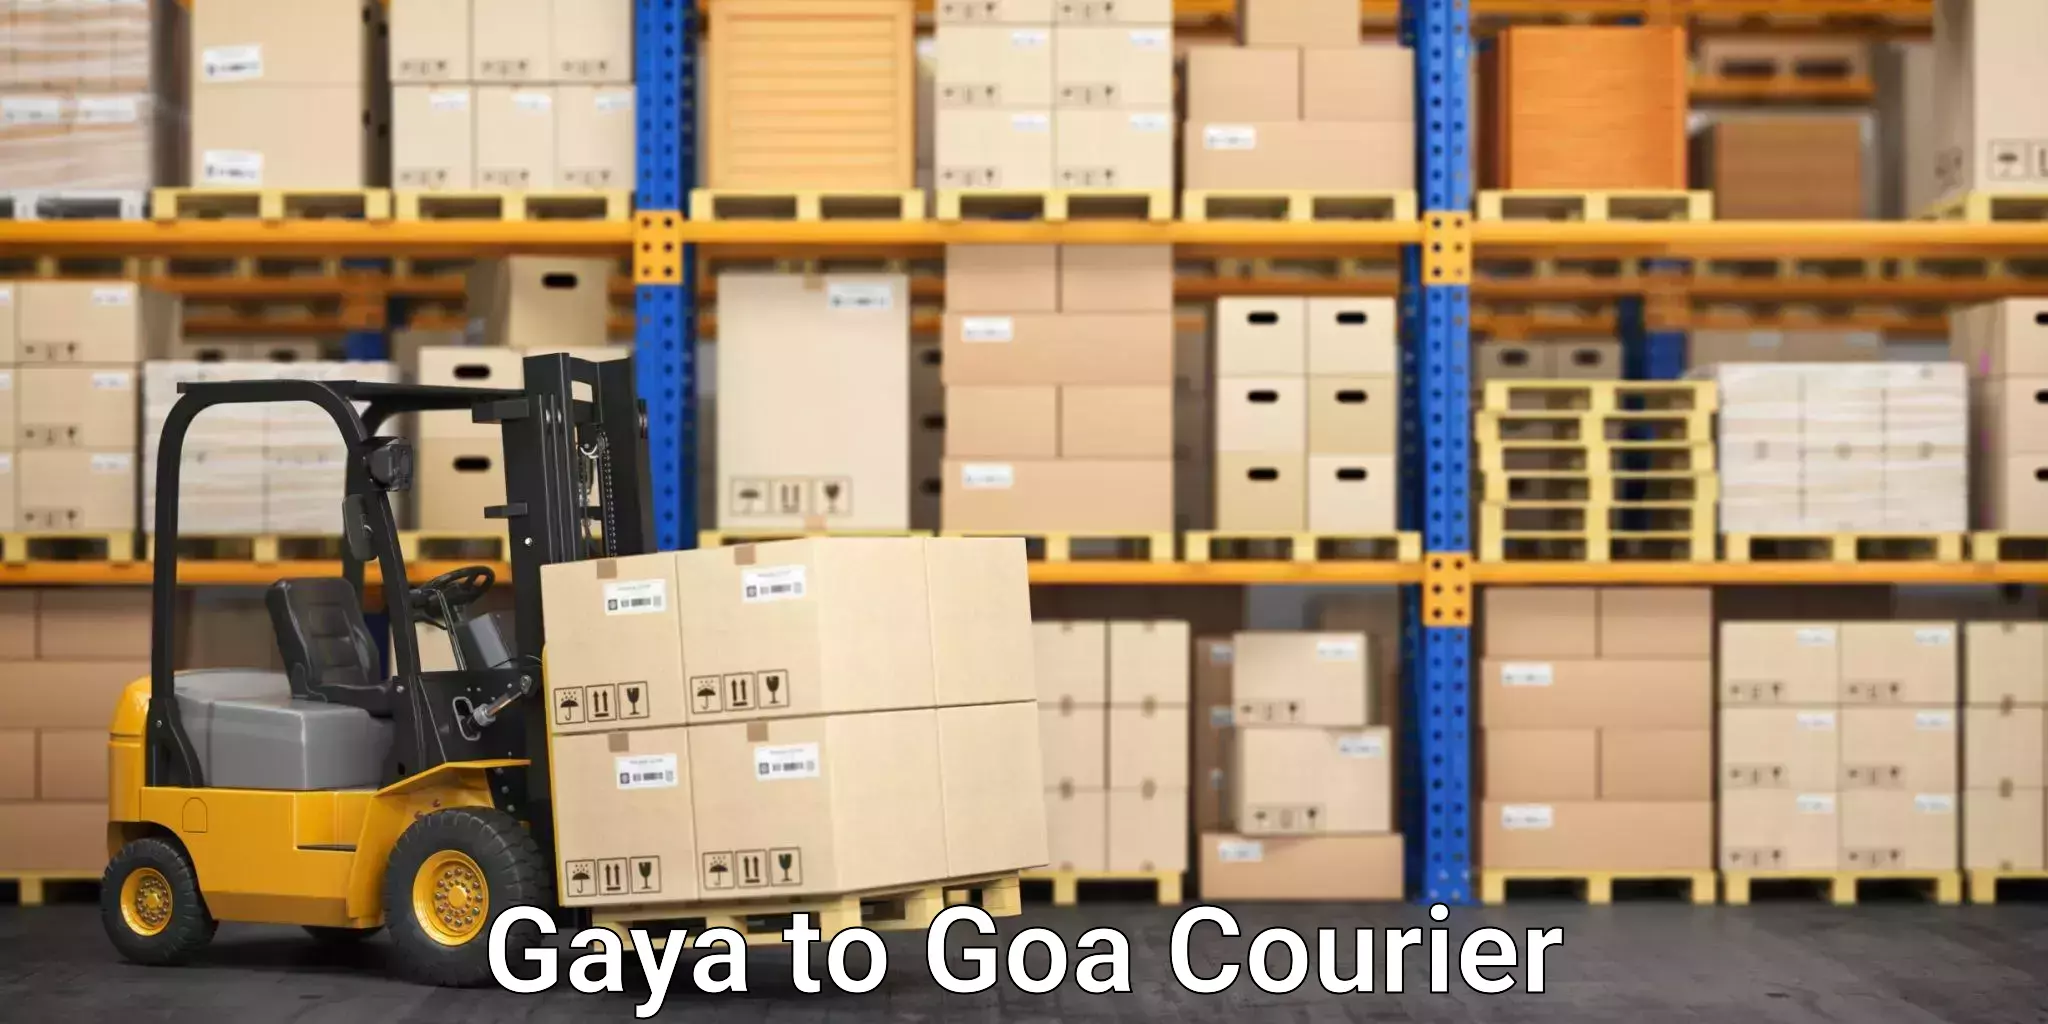 Furniture moving experts Gaya to Goa